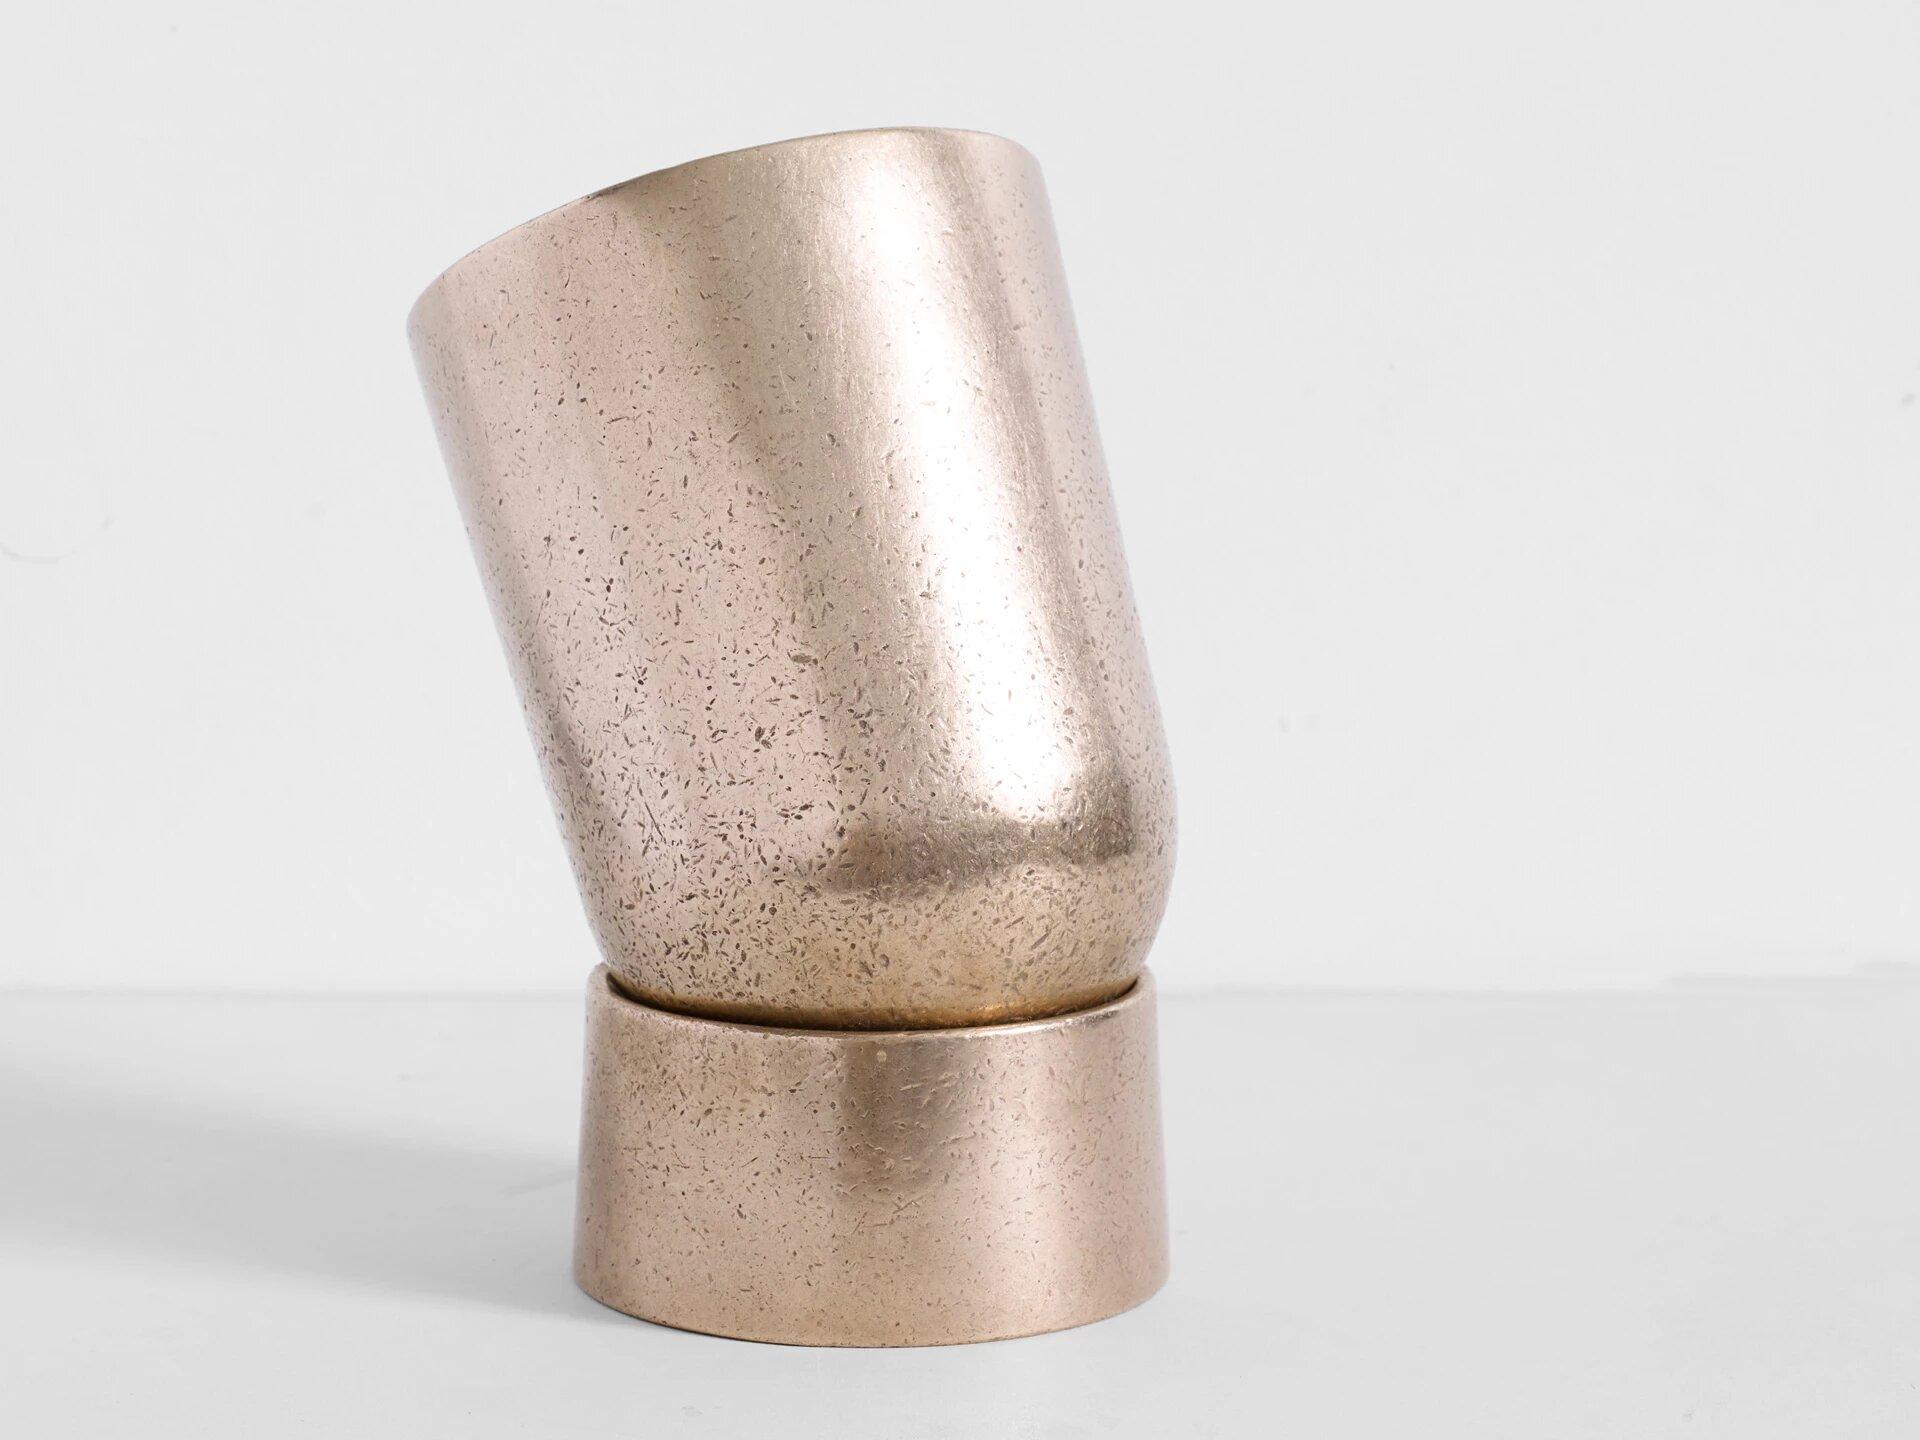 Bronze-Tischlampe von Henry Wilson
Abmessungen: D 13 x H 21 cm
MATERIALIEN: Bronze

Spotlight ist eine direkte, skulpturale Leuchte, die in zwei Teilen aus massiver Rotgussbronze gegossen ist.  

Jeder Guss wird in kleinen Chargen hergestellt, was